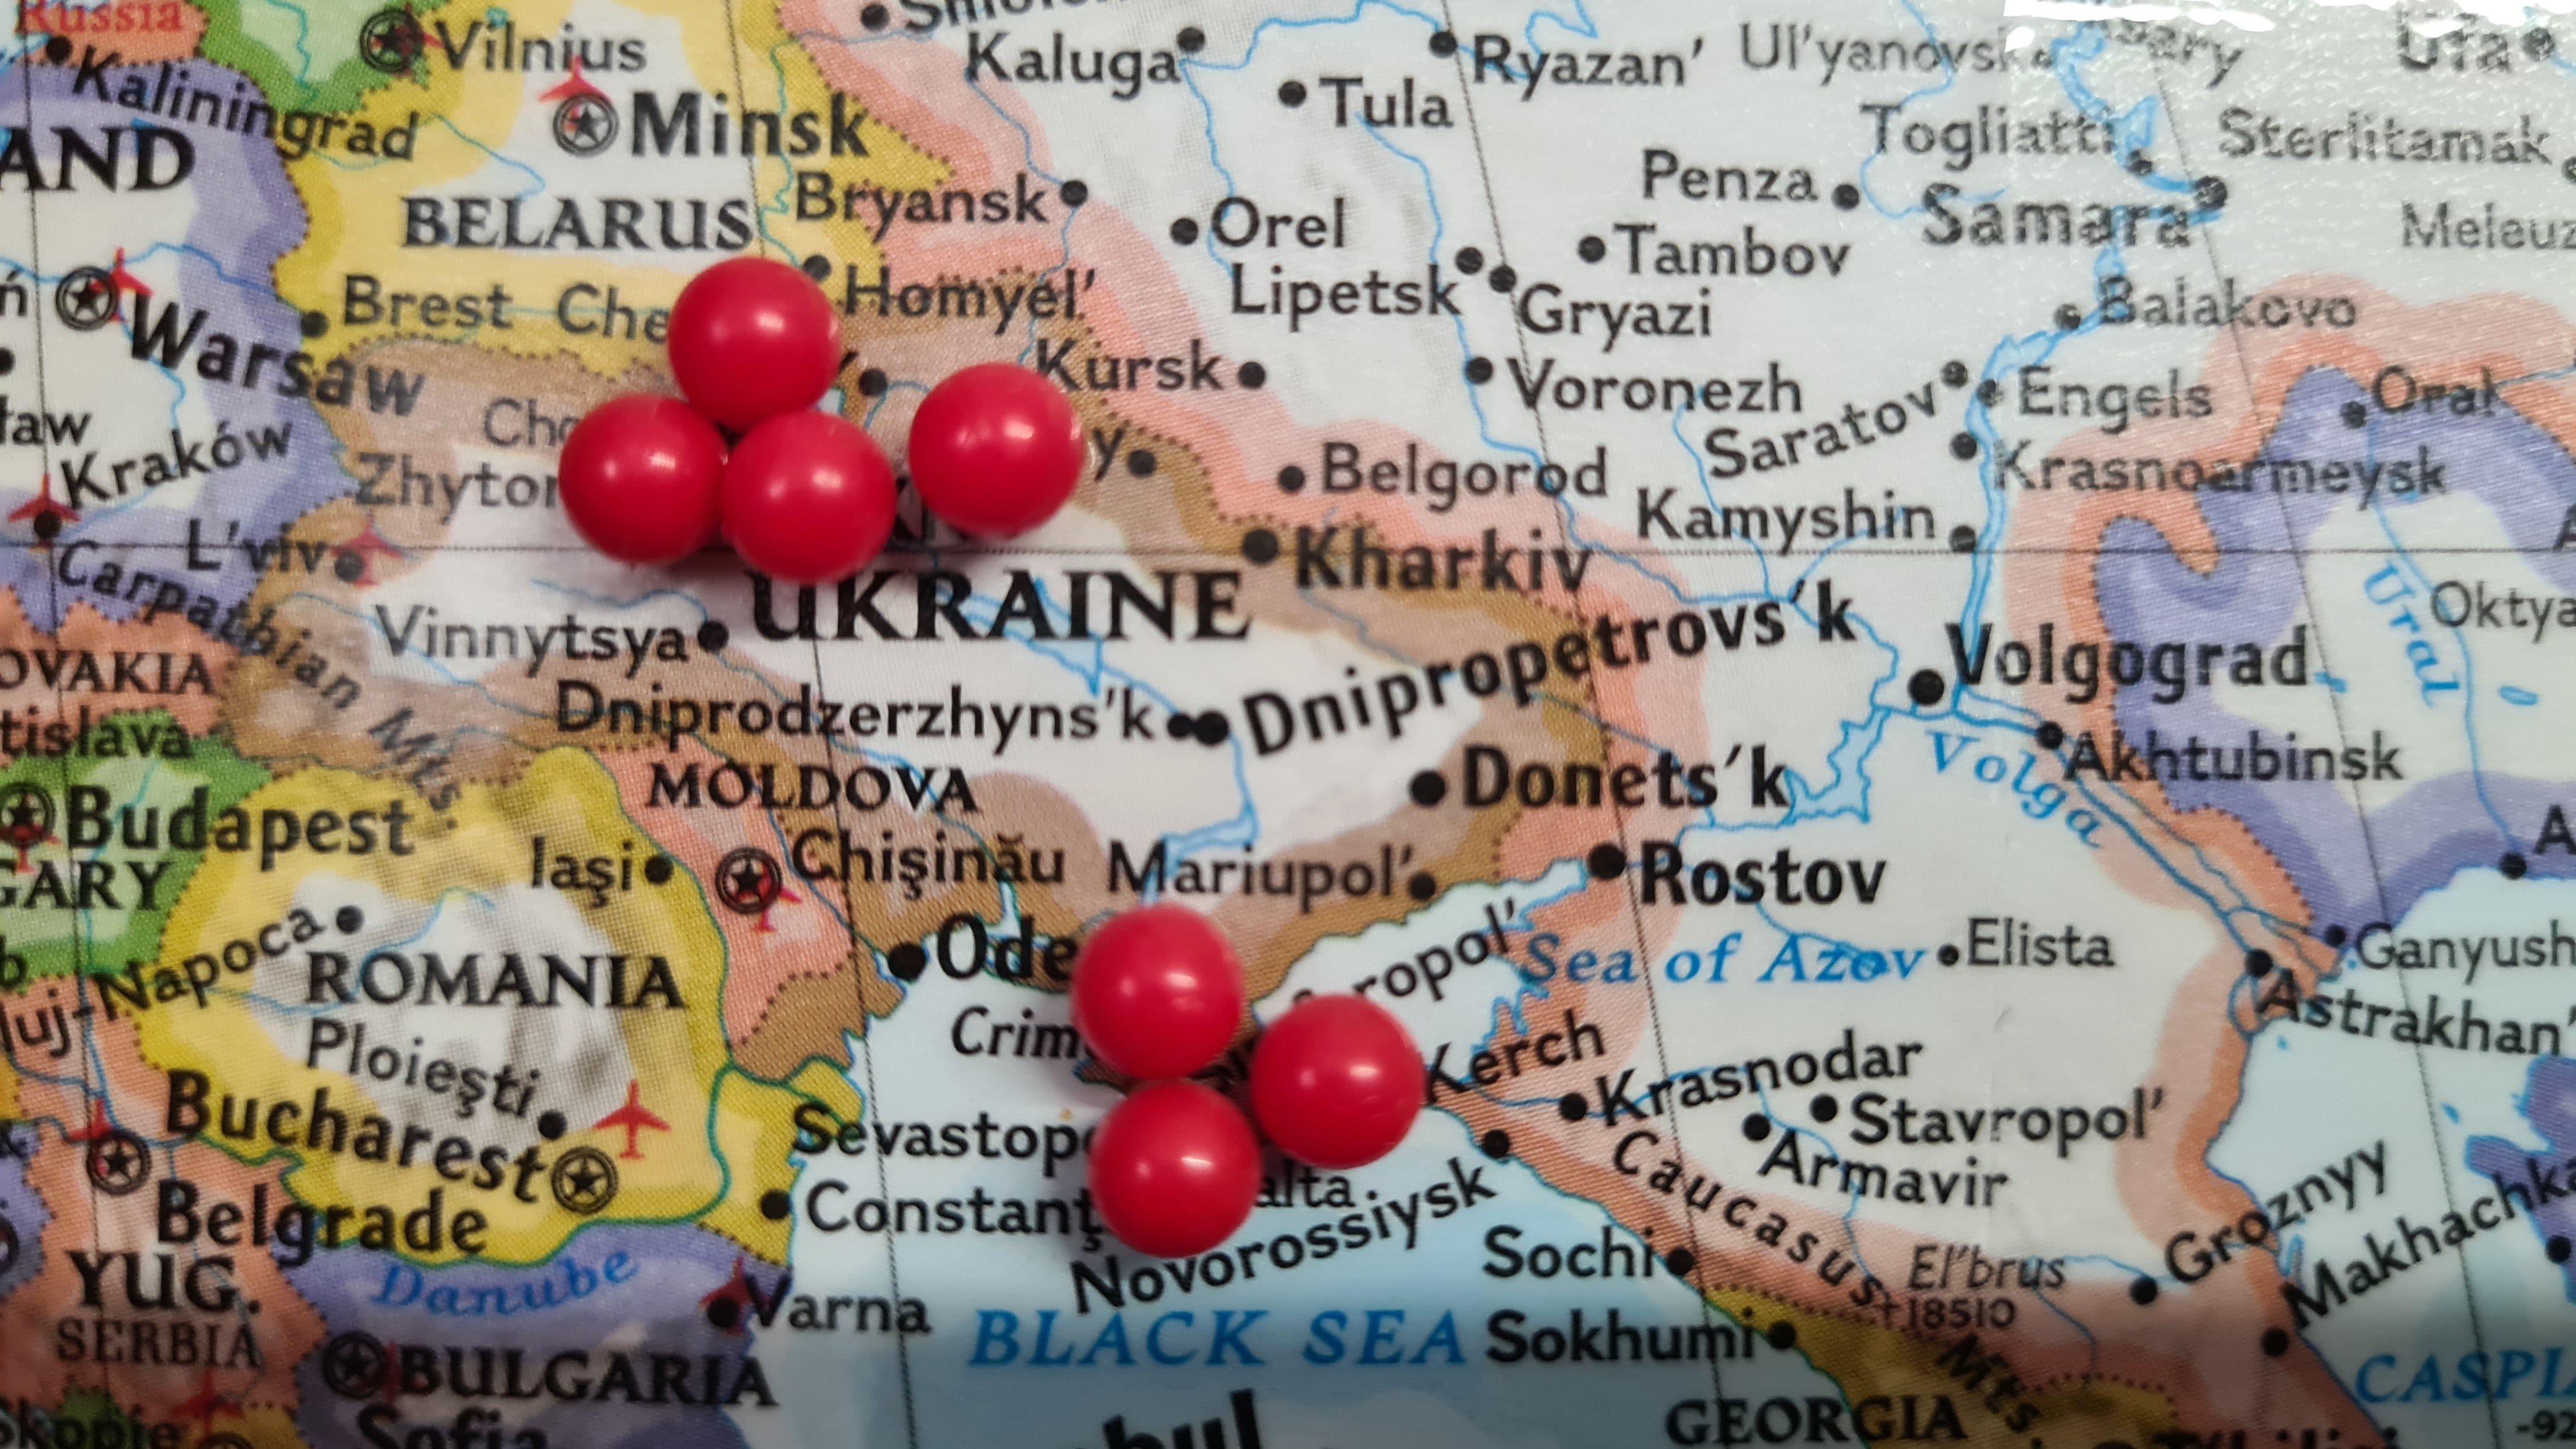 Les llibreries russes ja mostren noves regions: com es dibuixa Ucraïna?